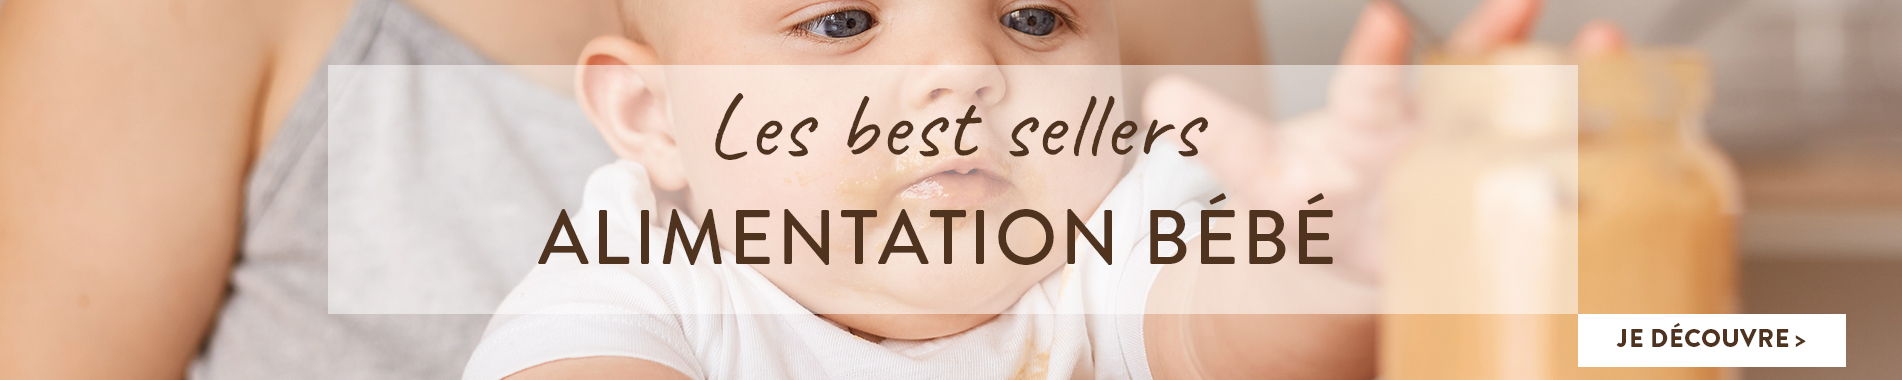 Best sellers : Les meilleures ventes d'alimentation bébé en parapharmacie